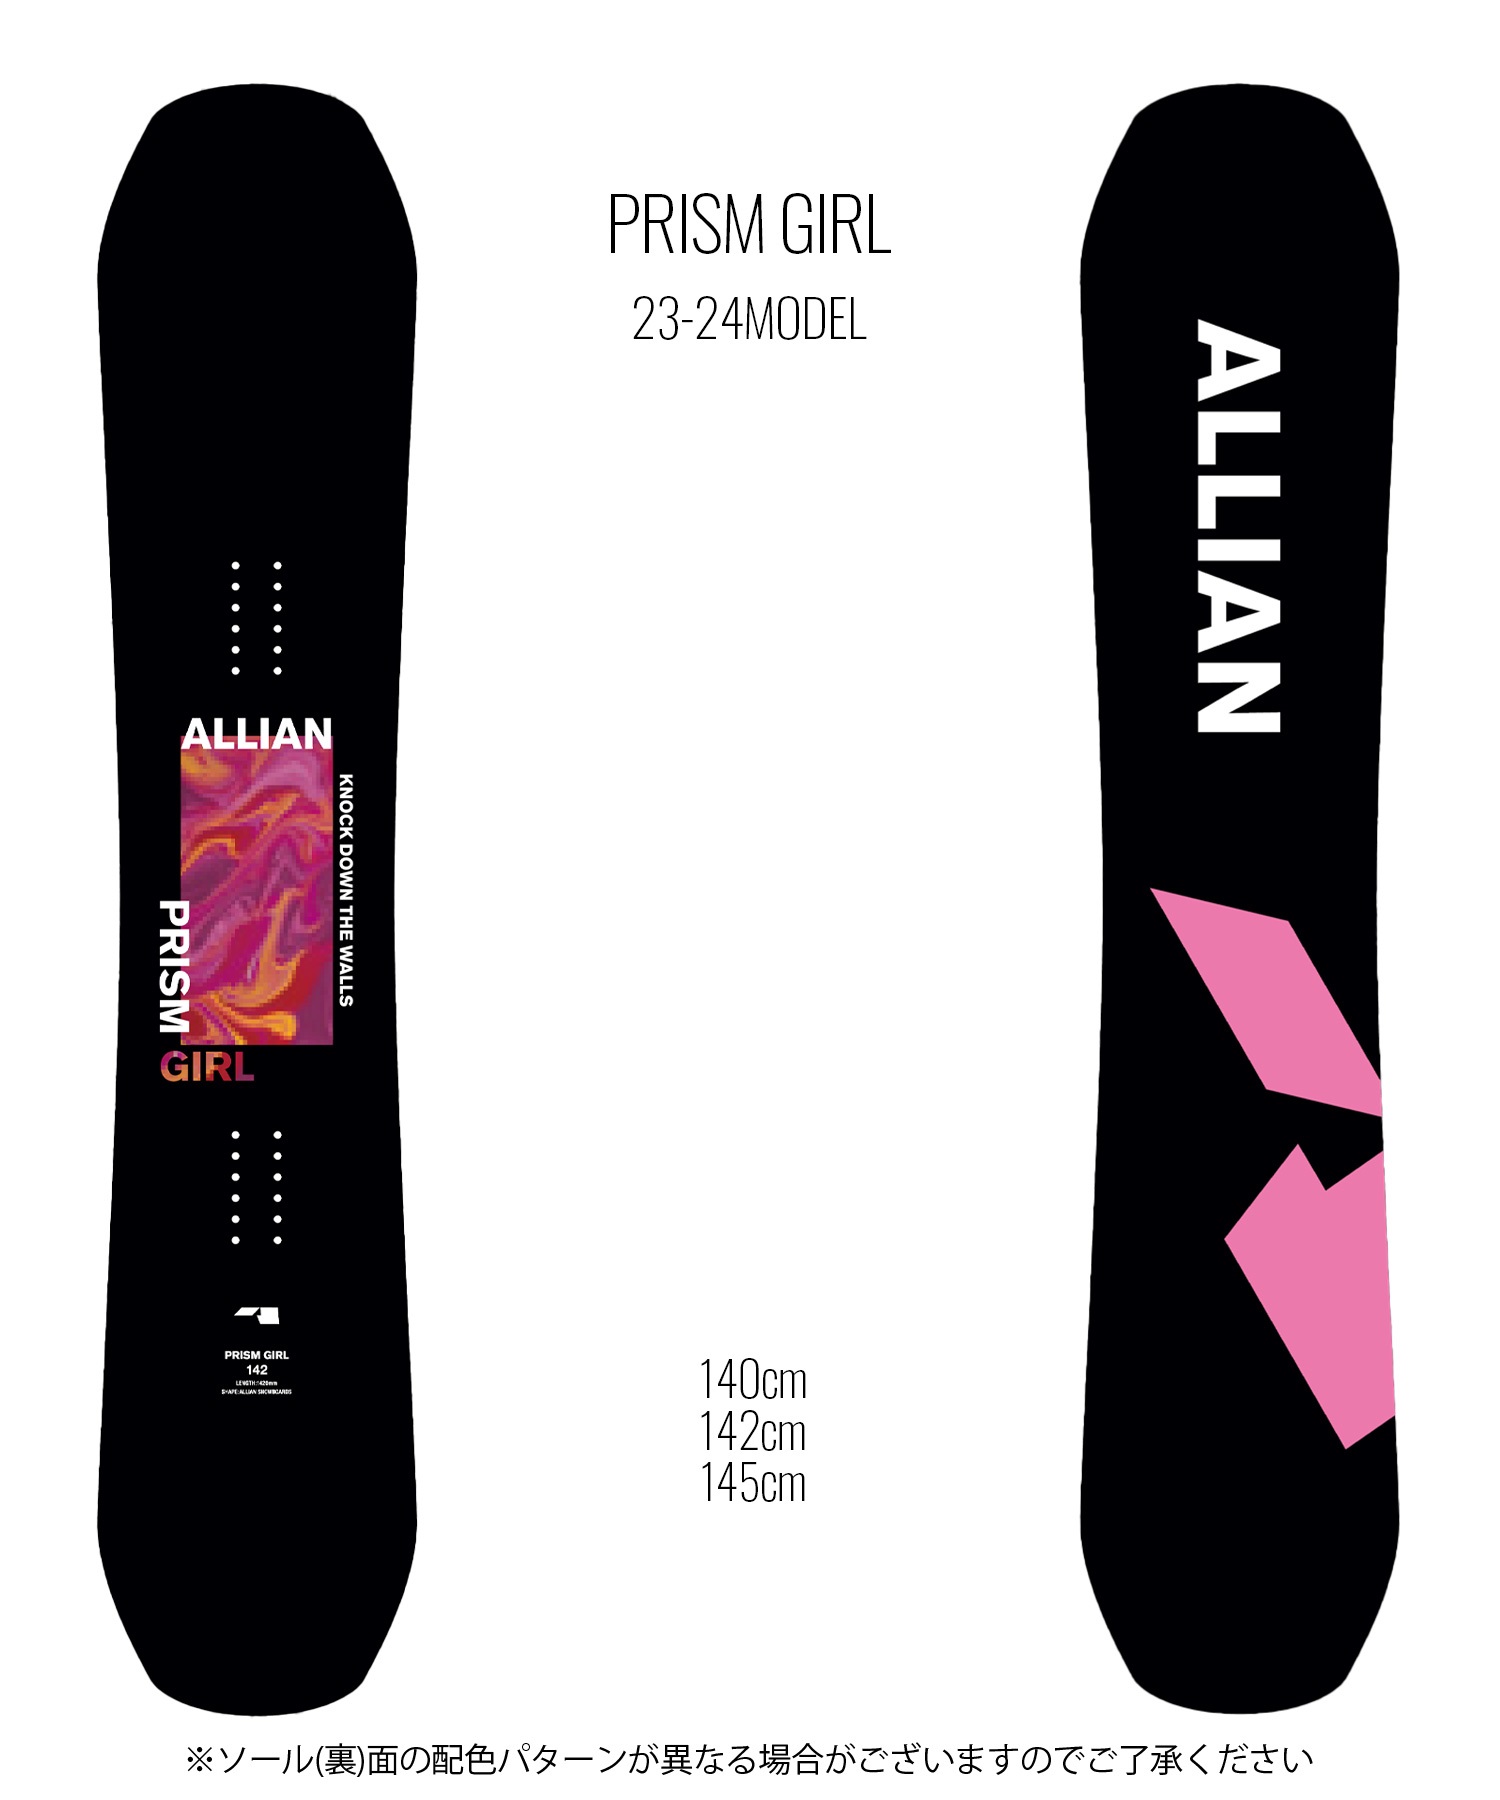 スノーボード 板 レディース ALLIAN アライアン PRISM GIRL 23-24モデル ムラサキスポーツ KK F15(BKPK-140cm)